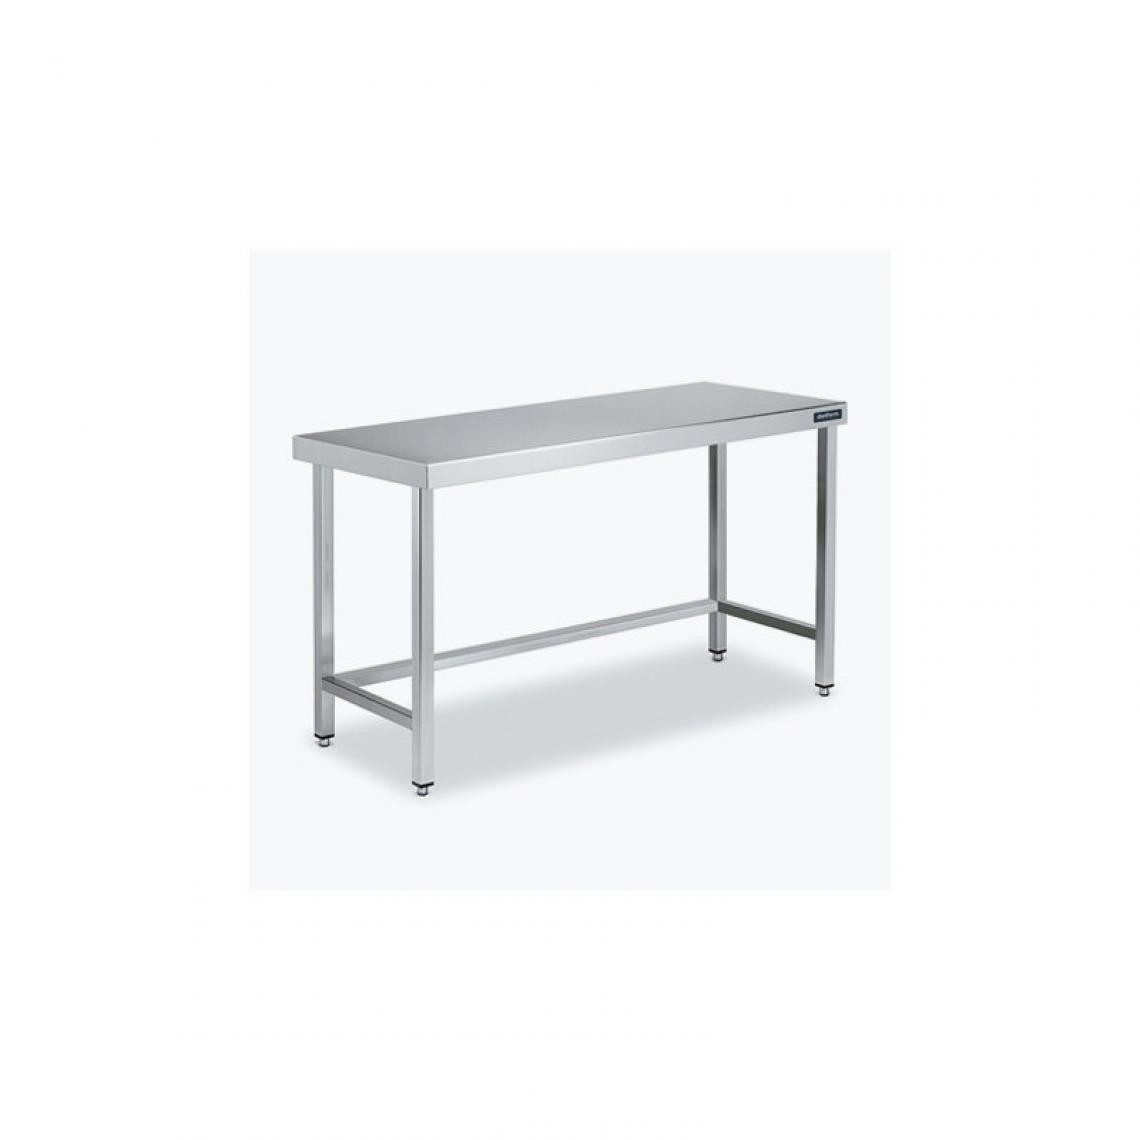 DISTFORM - Table Centrale 600x600 avec Renforts - Distform - Inox 18/101300x600x850mm - Tables à manger